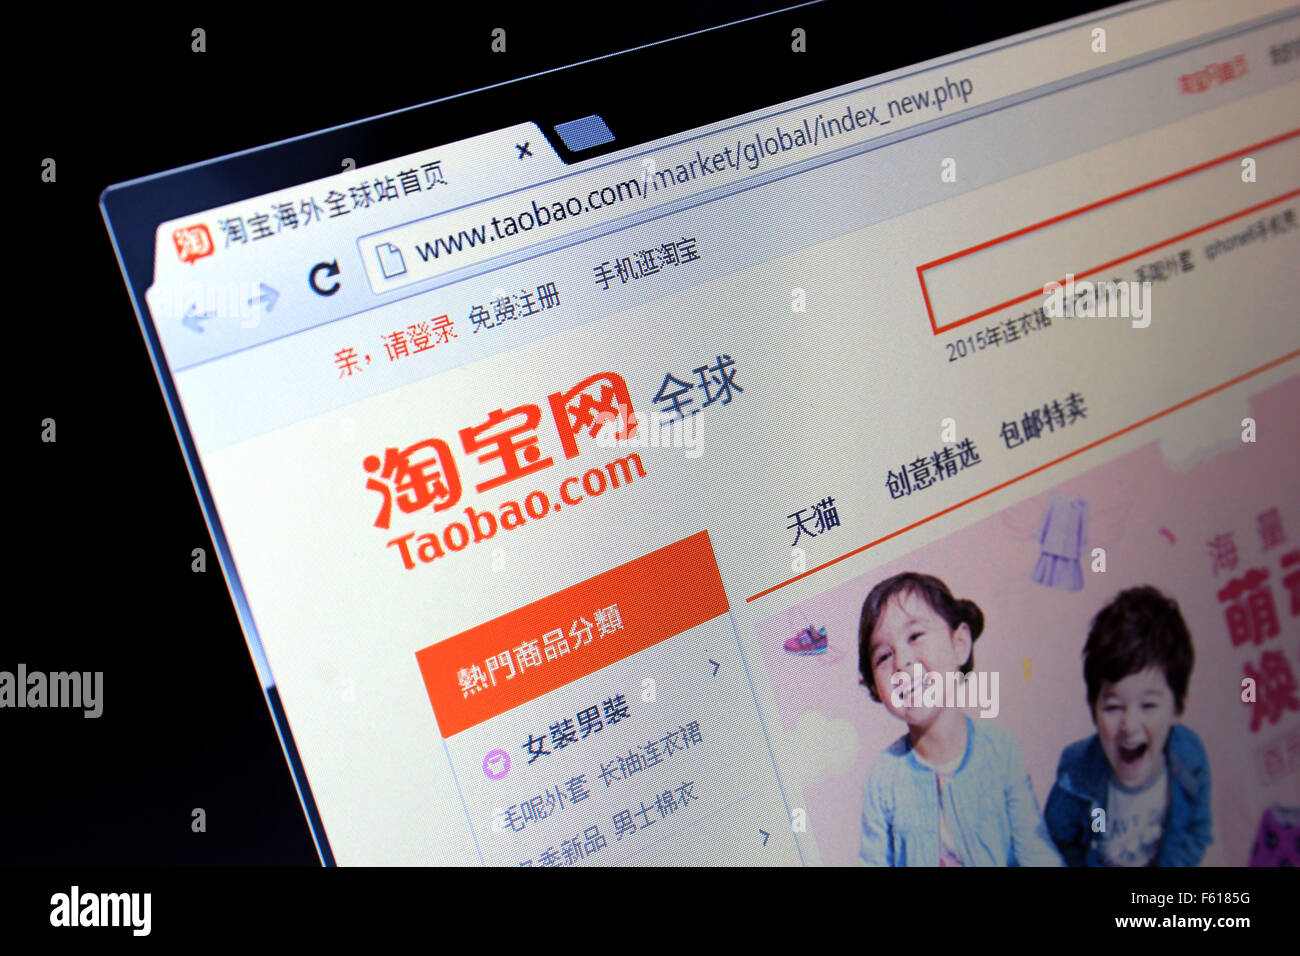 taobao.com website Stock Photo